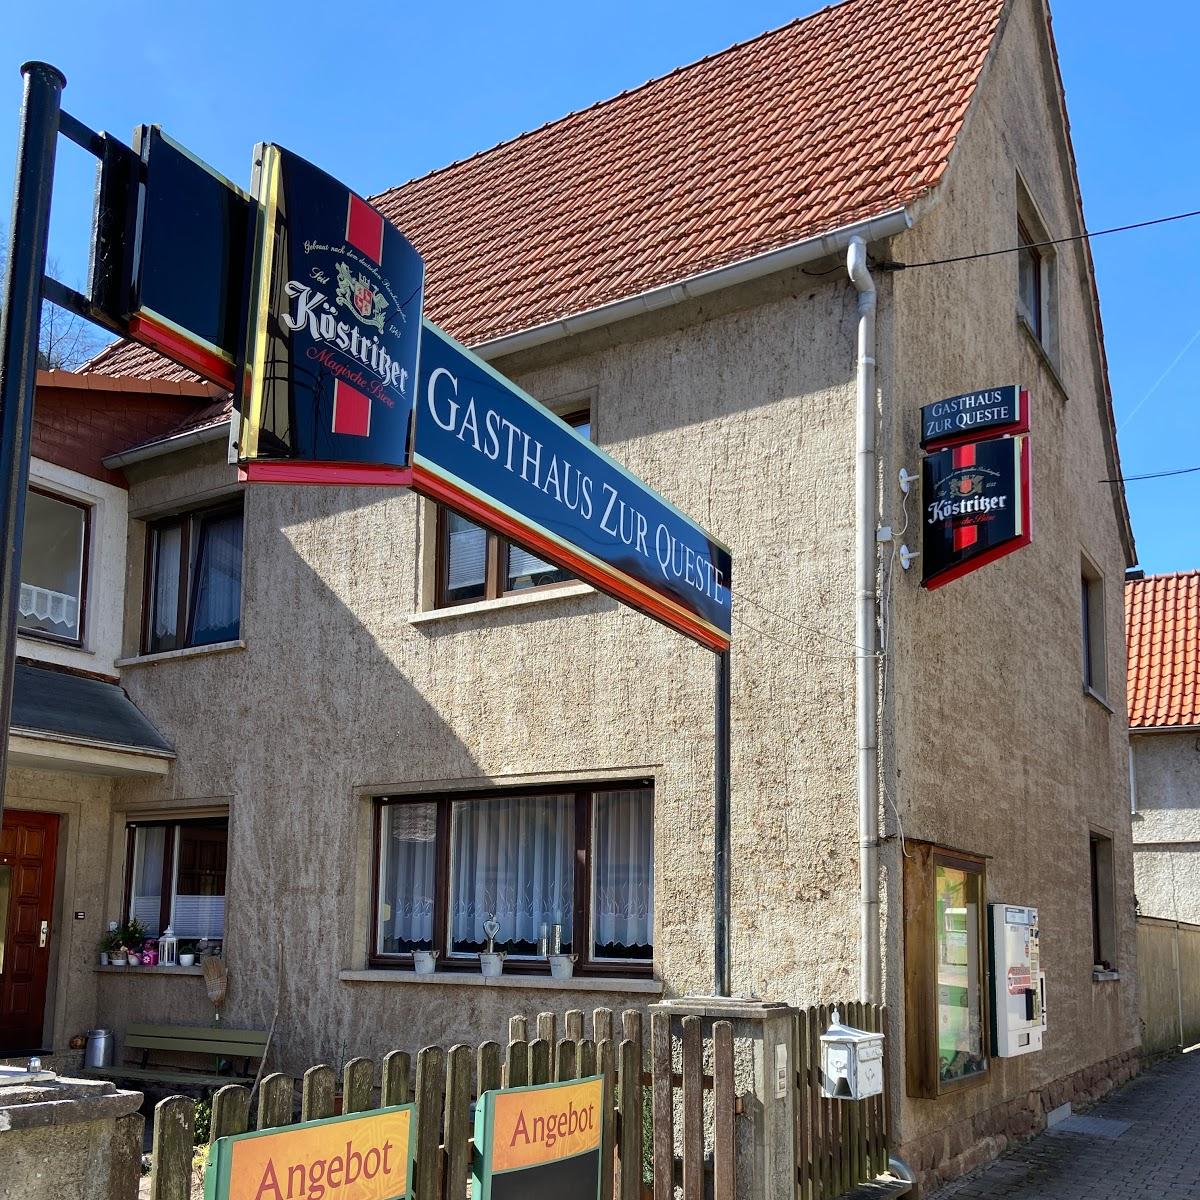 Restaurant "GASTHAUS ZUR QUESTE" in Südharz